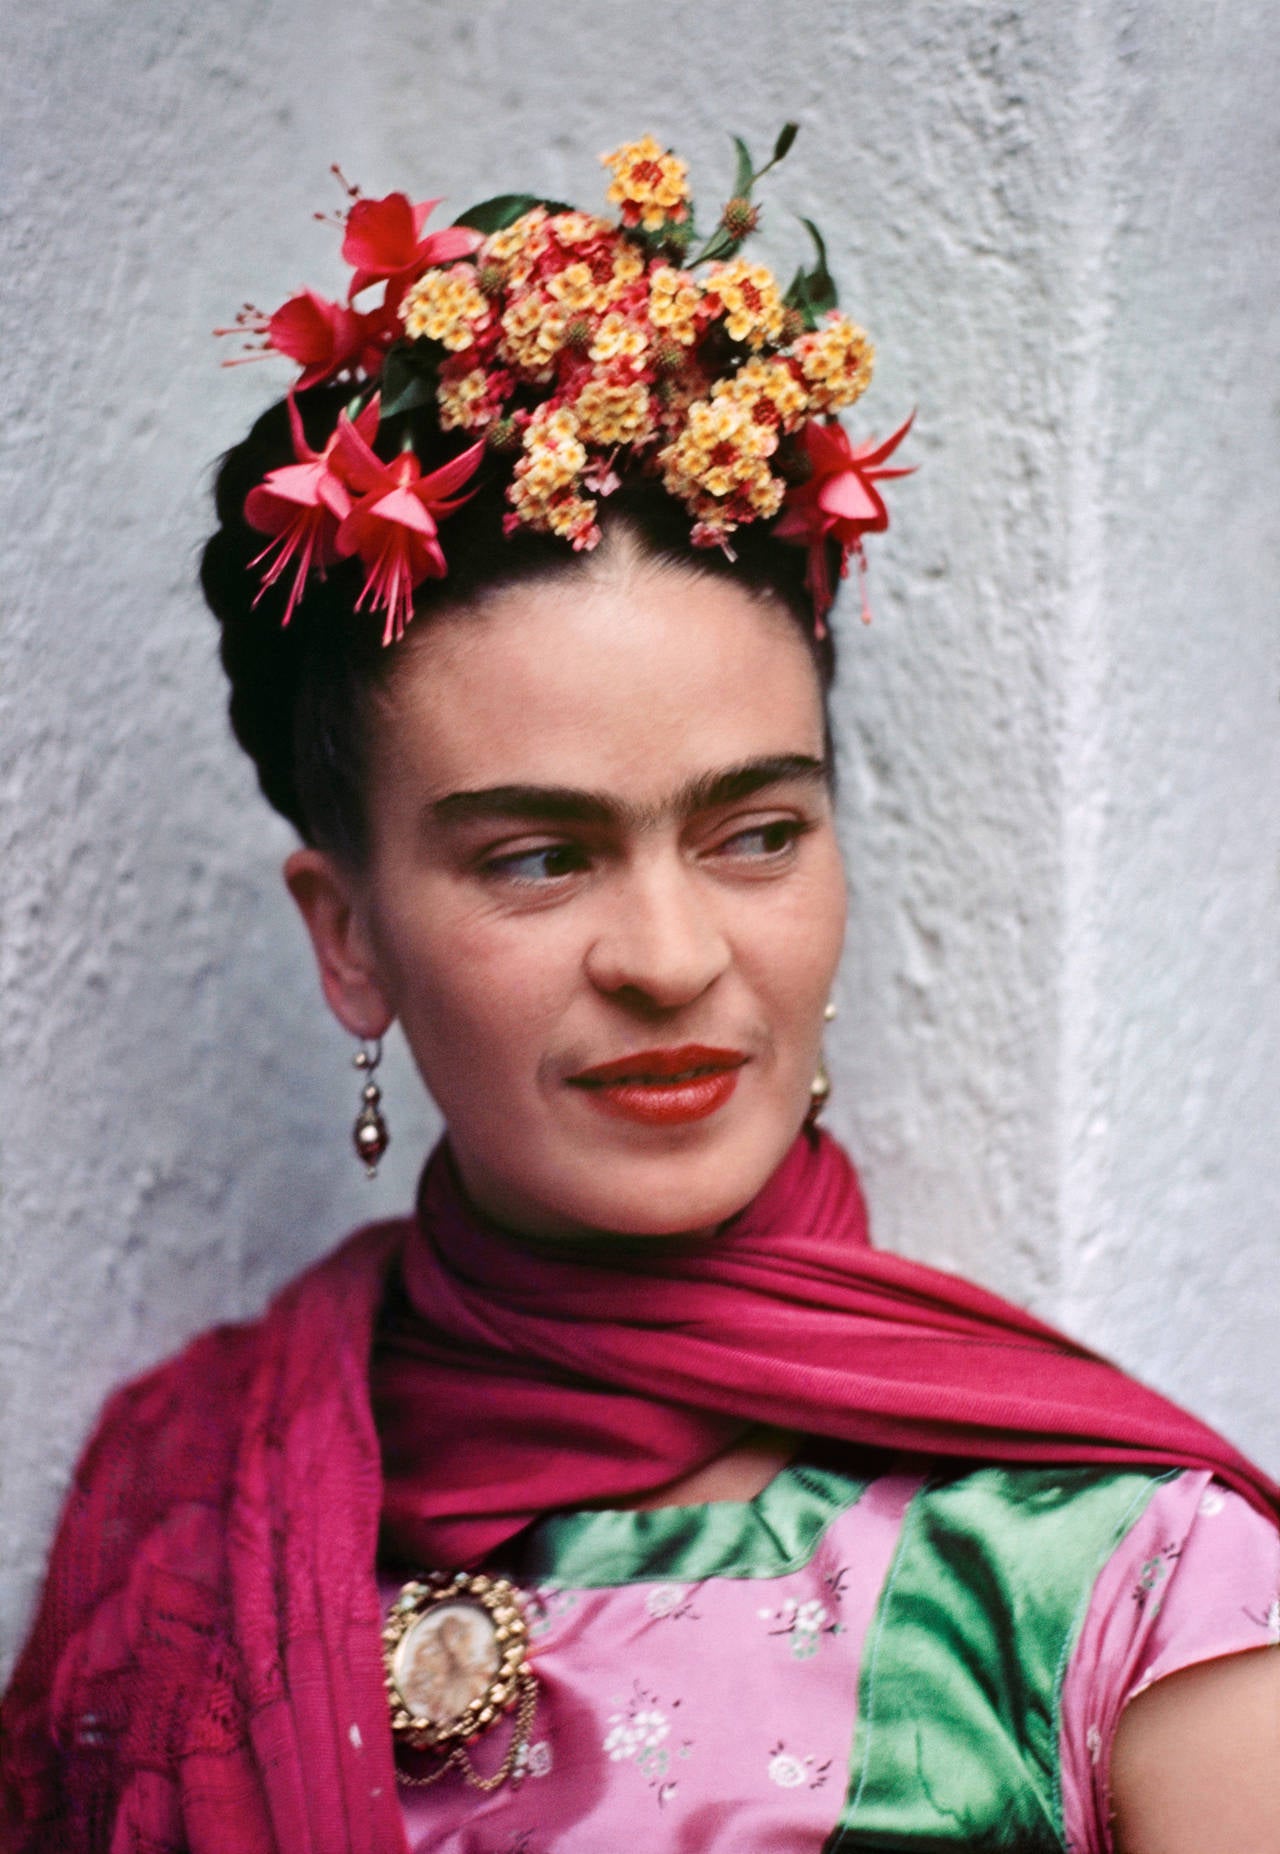 Frida-Bluse in Rosa und Grün von Nickolas Muray, 1938, Kohlenstoffpigmentdruck